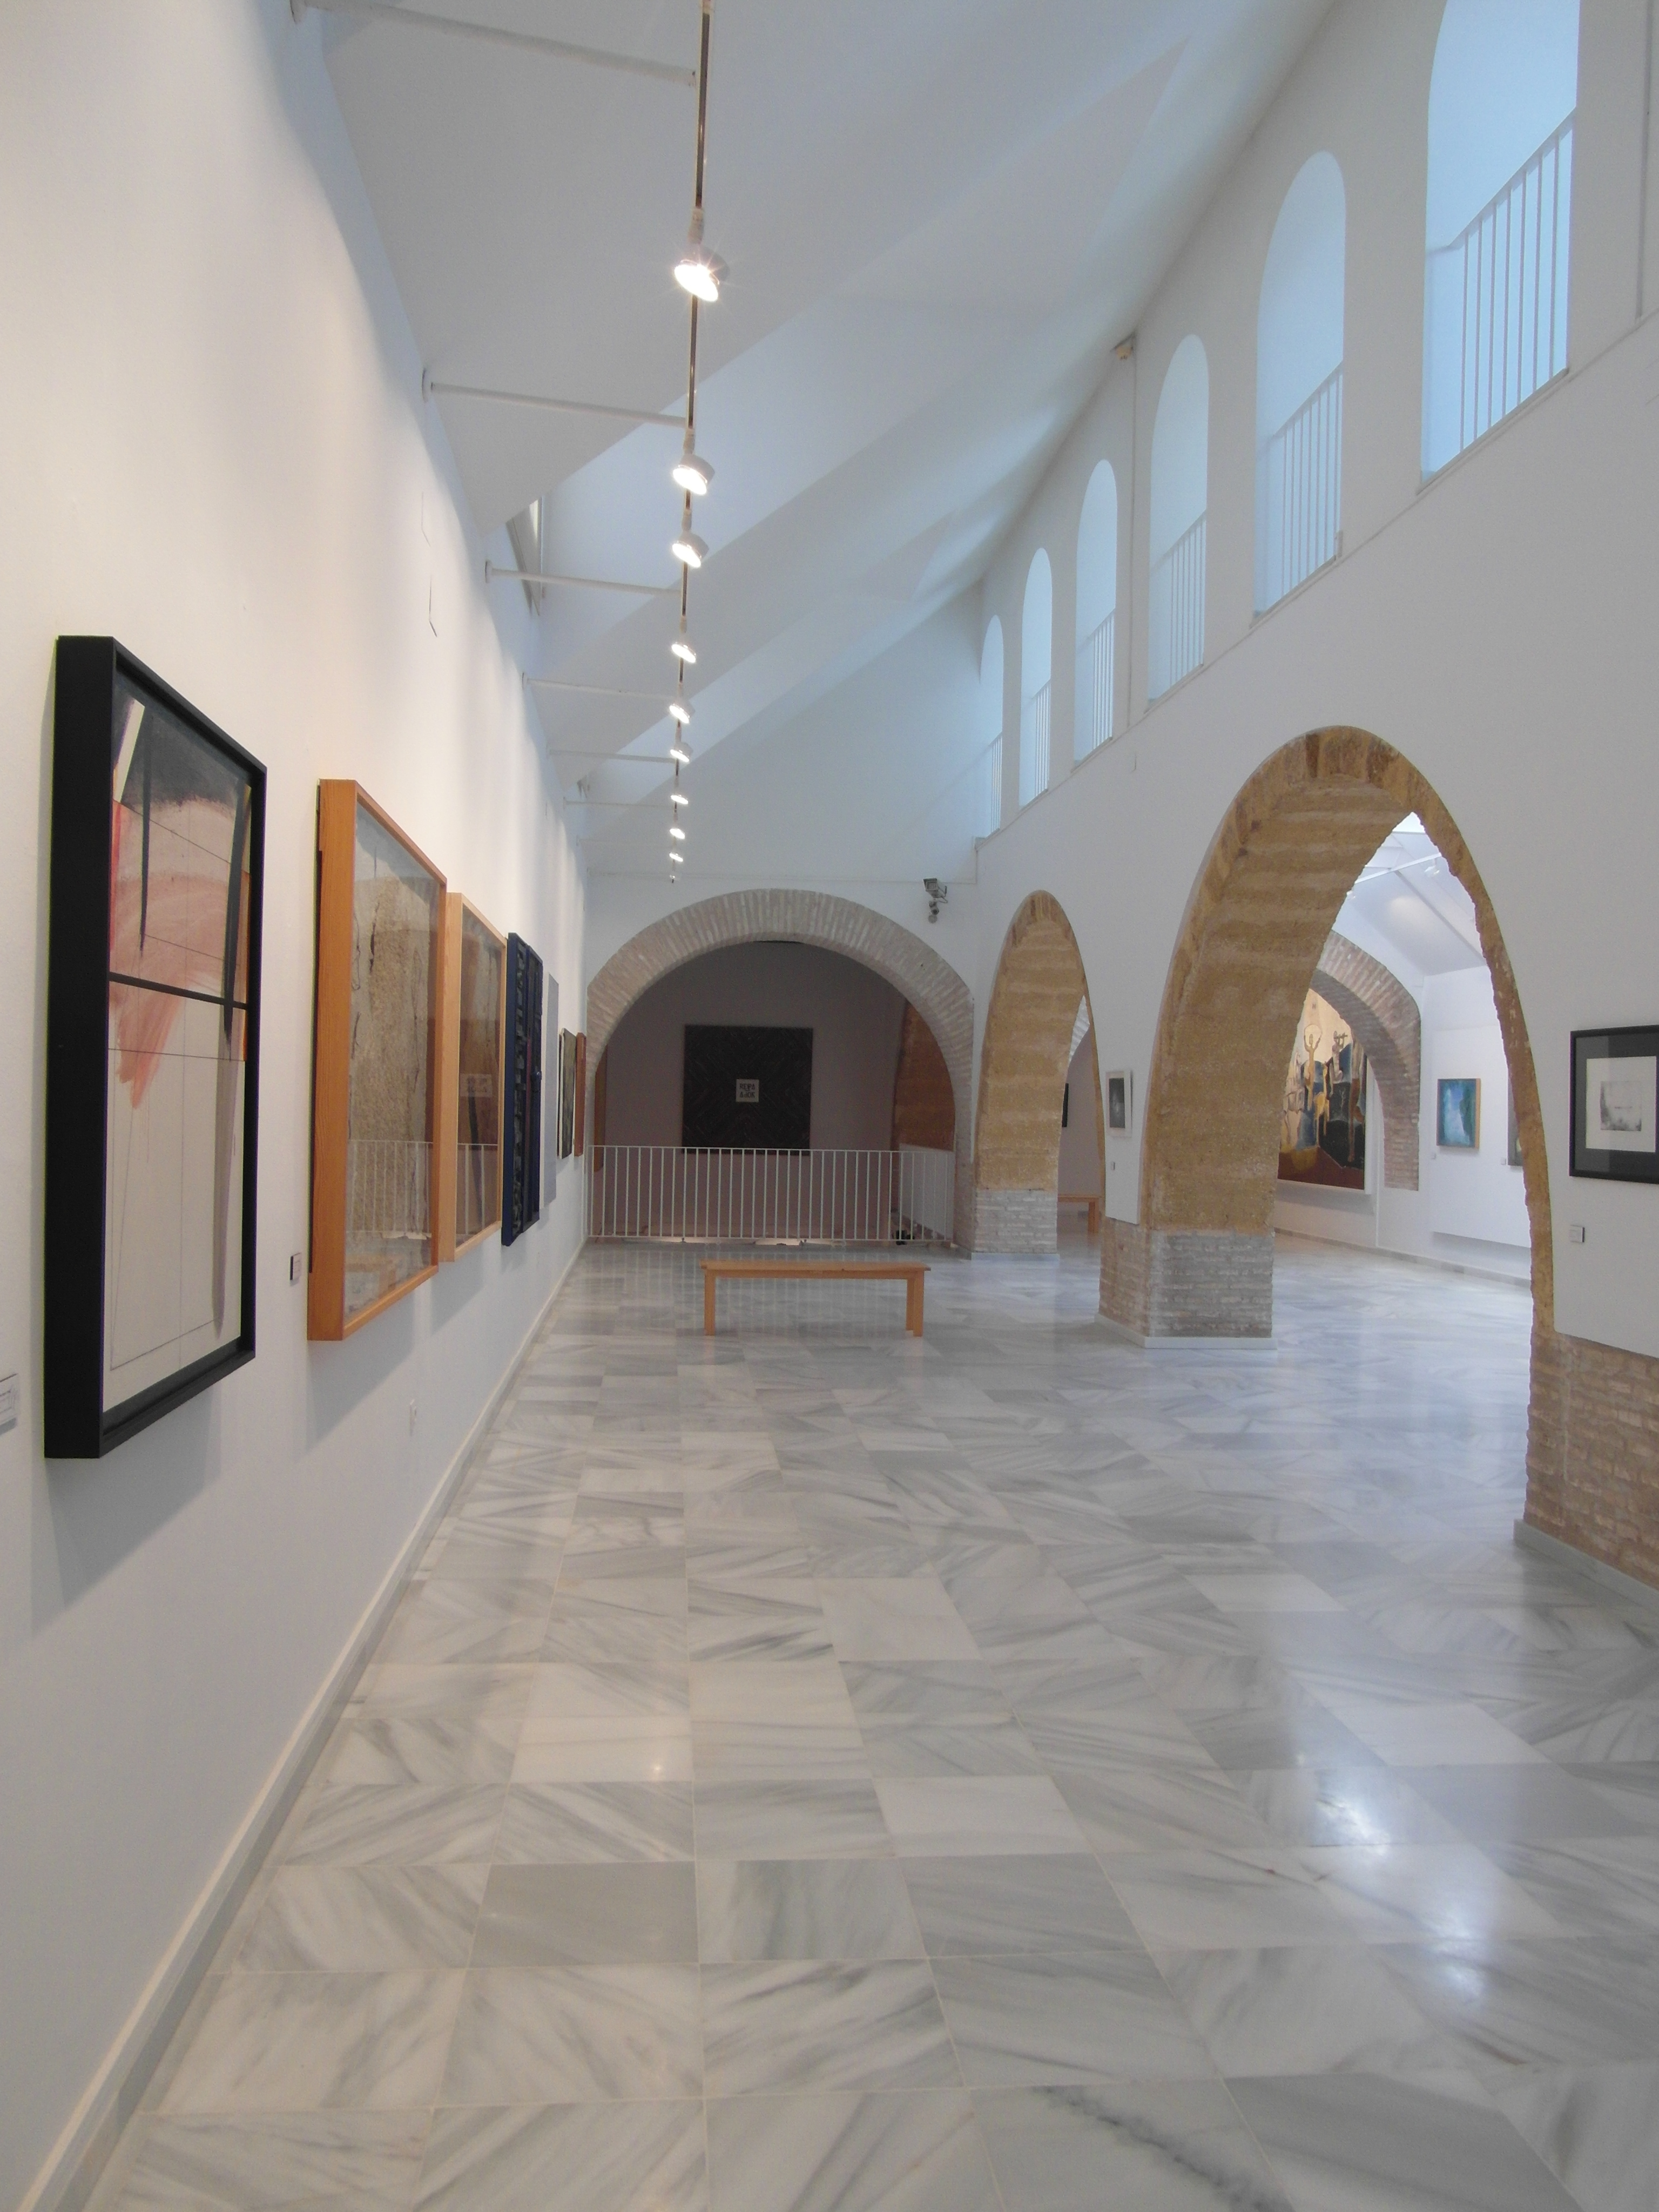 Museo de Arte Contemporáneo José María Moreno Galván